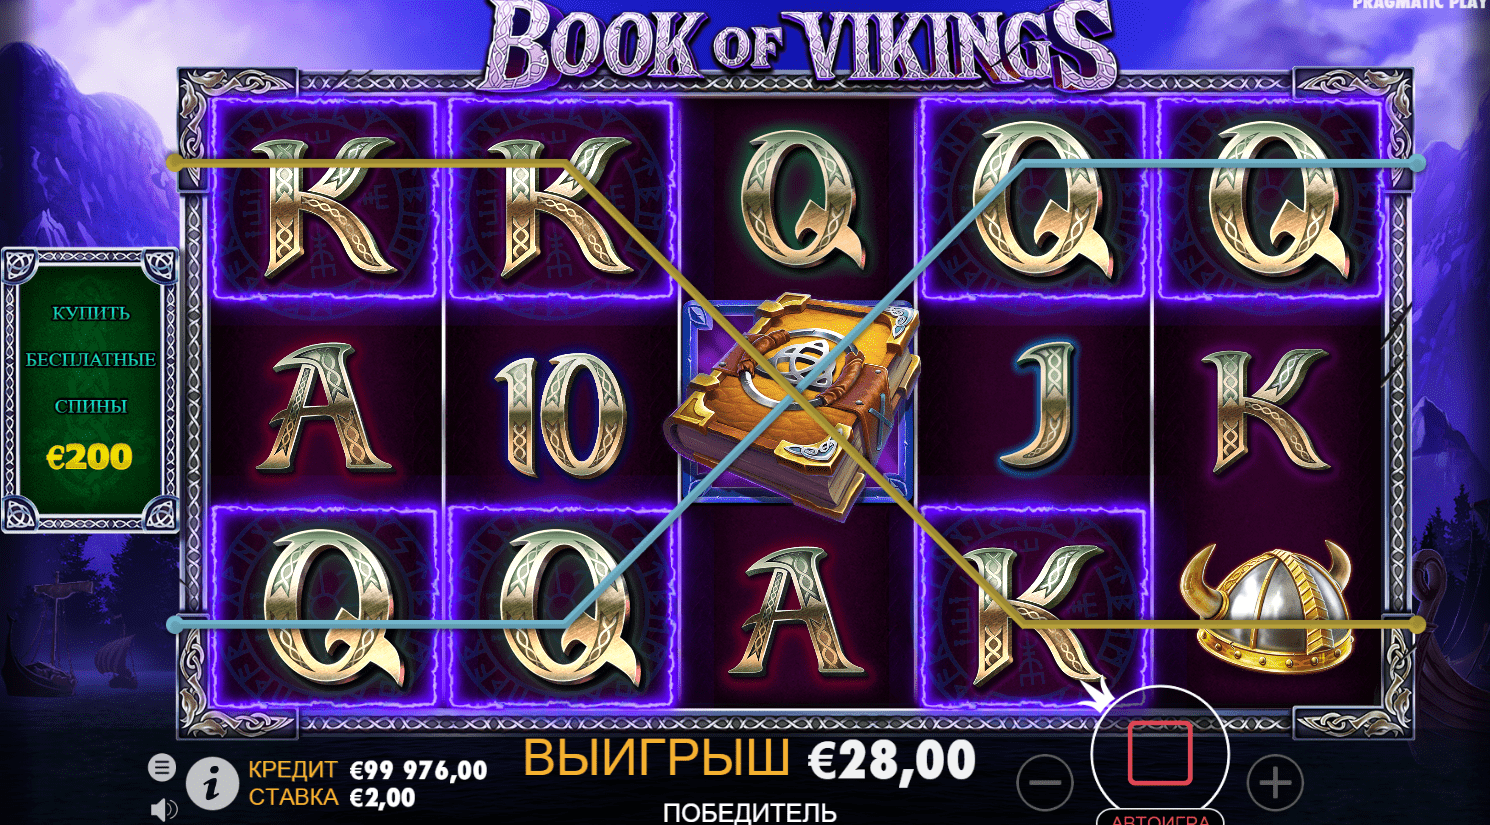 Бесплатные вращения в игре Book of Vikings